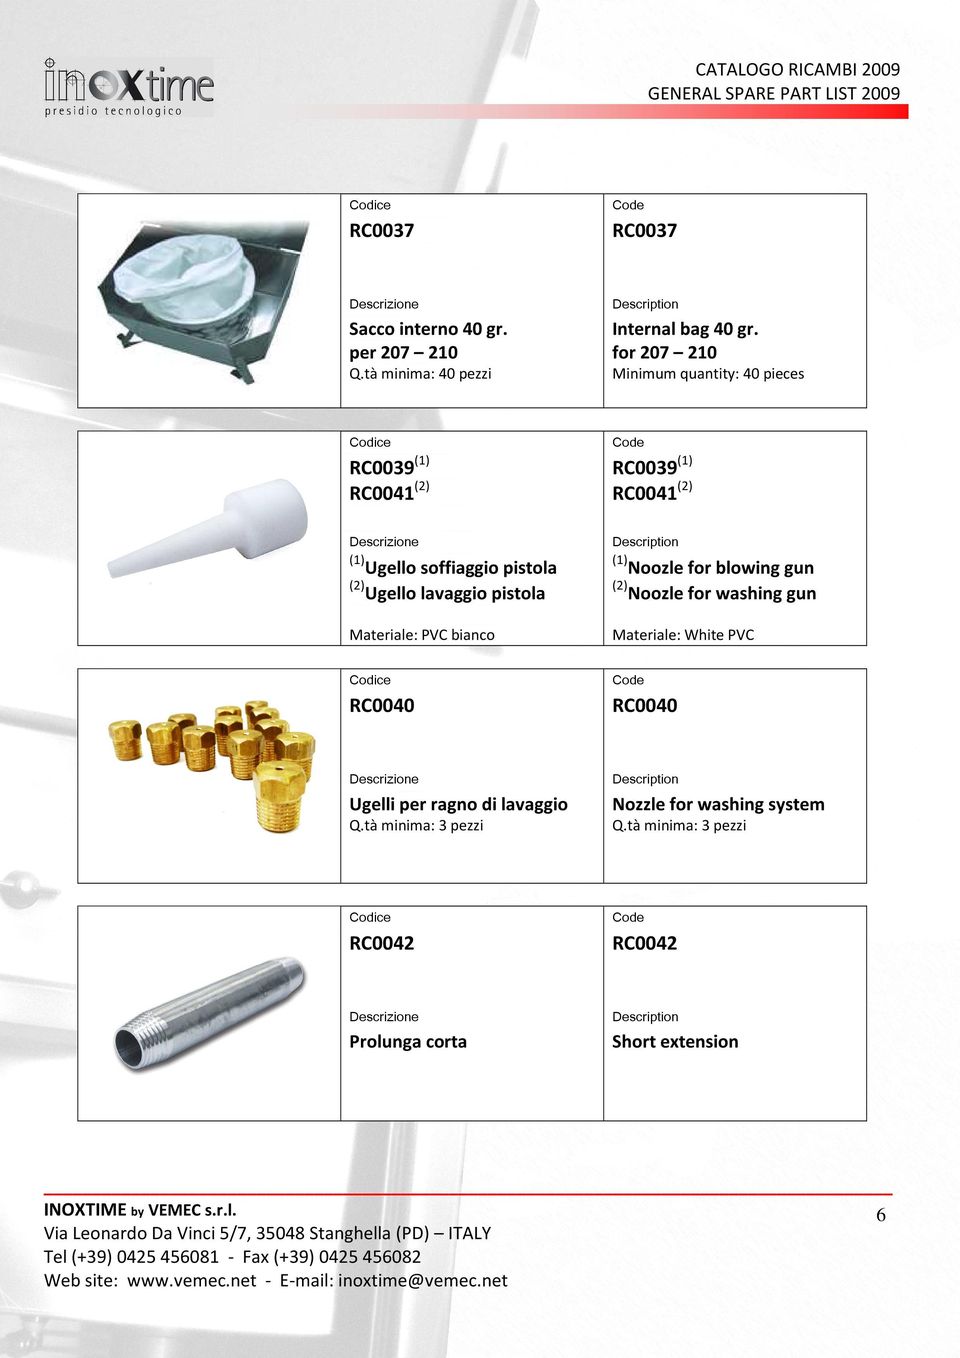 (2) Ugello lavaggio pistola (1) Materiale: PVC bianco Materiale: White PVC RC0040 RC0040 Ugelli per ragno di lavaggio